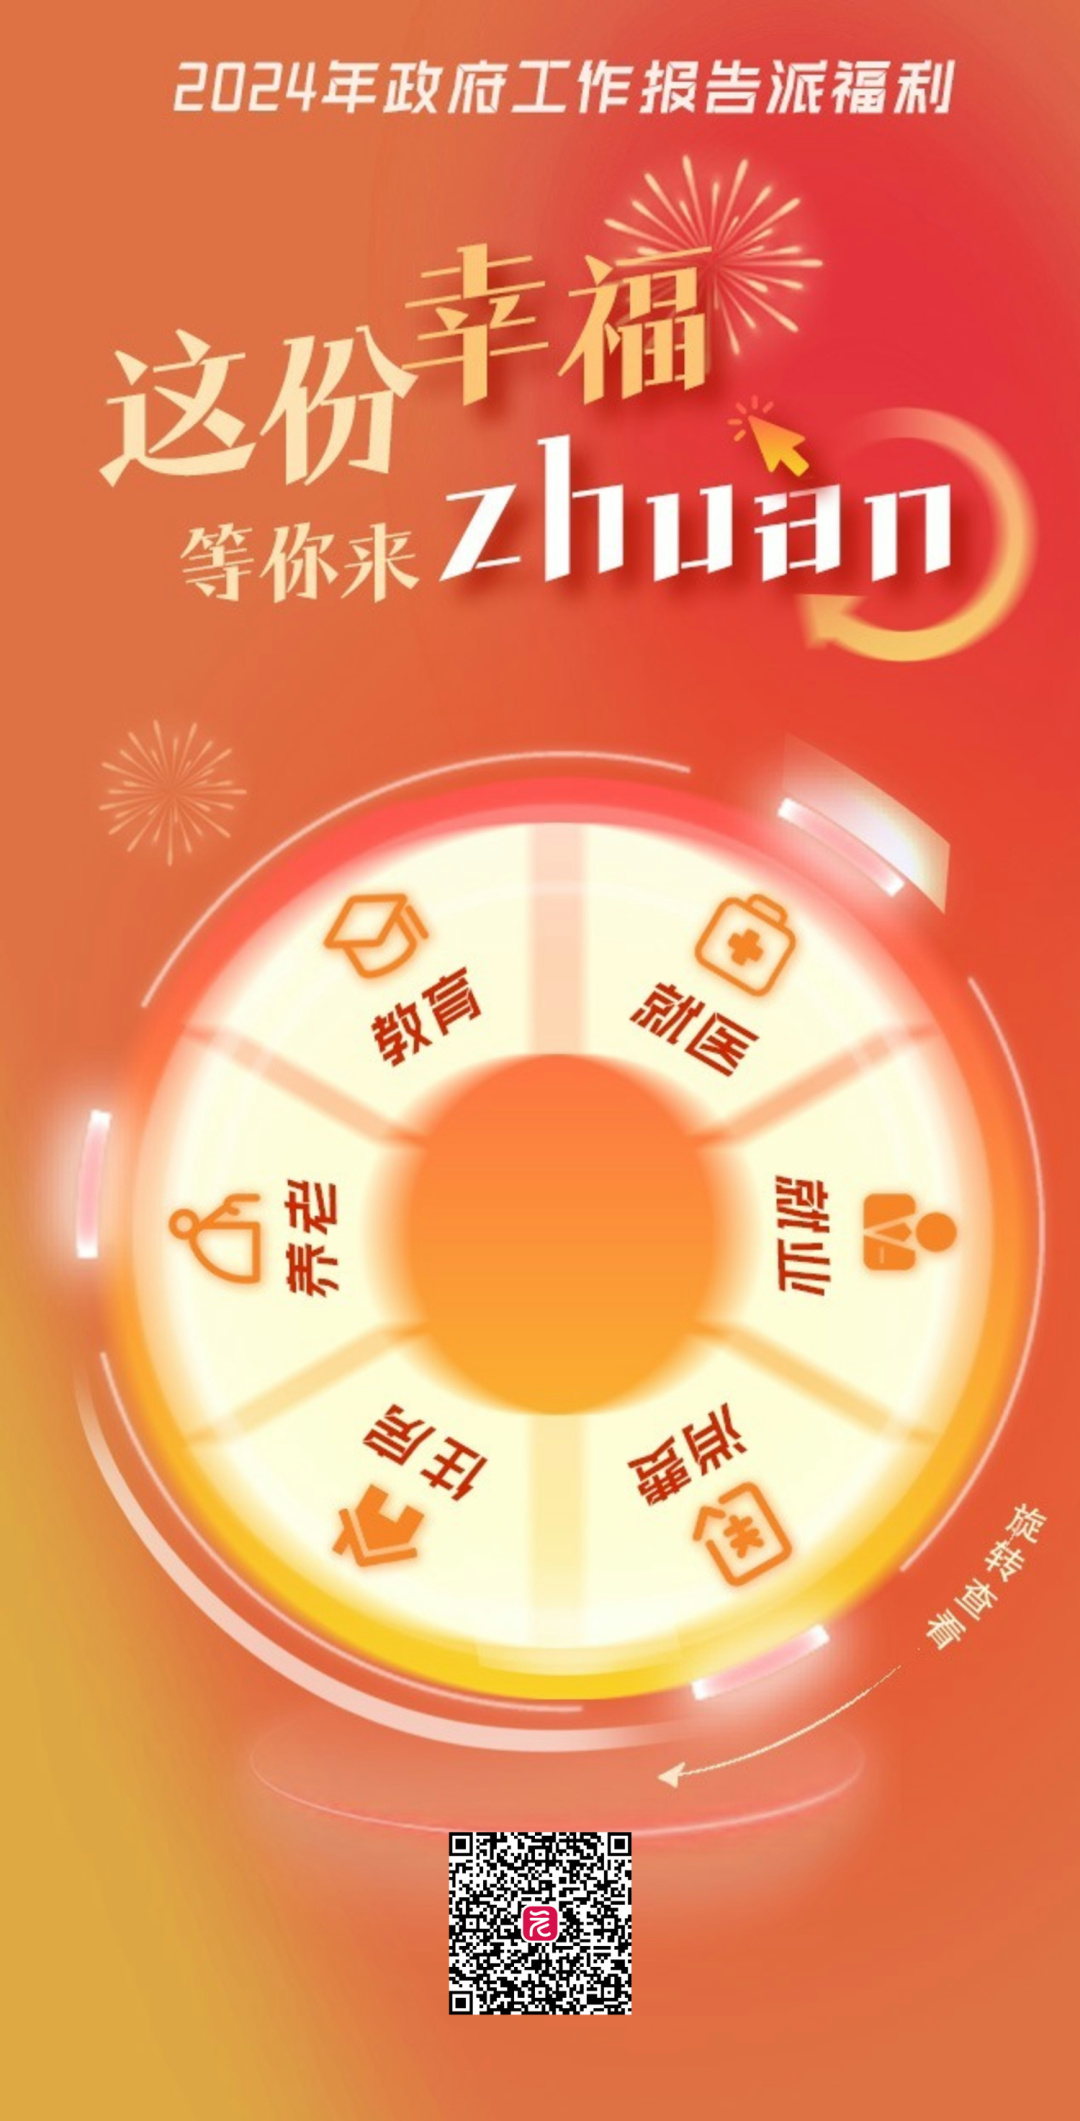 《这份幸福等你来zhuan》海报.jpg